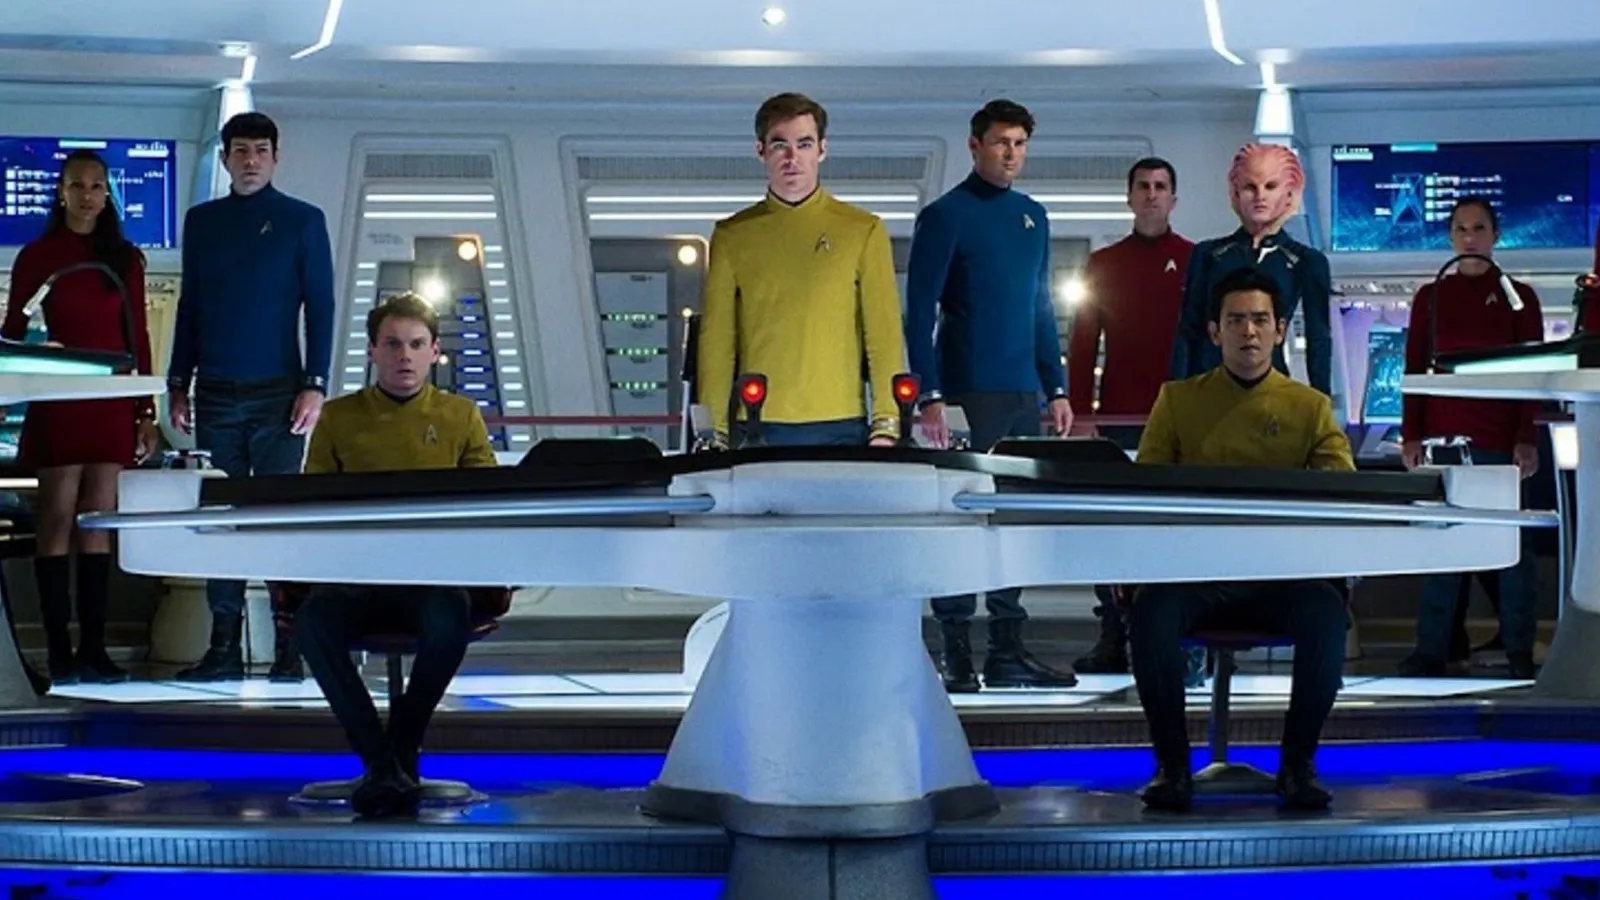 Star Trek 4 - nowy scenarzysta kinowego filmu. Znamy go z serialu platformy Max